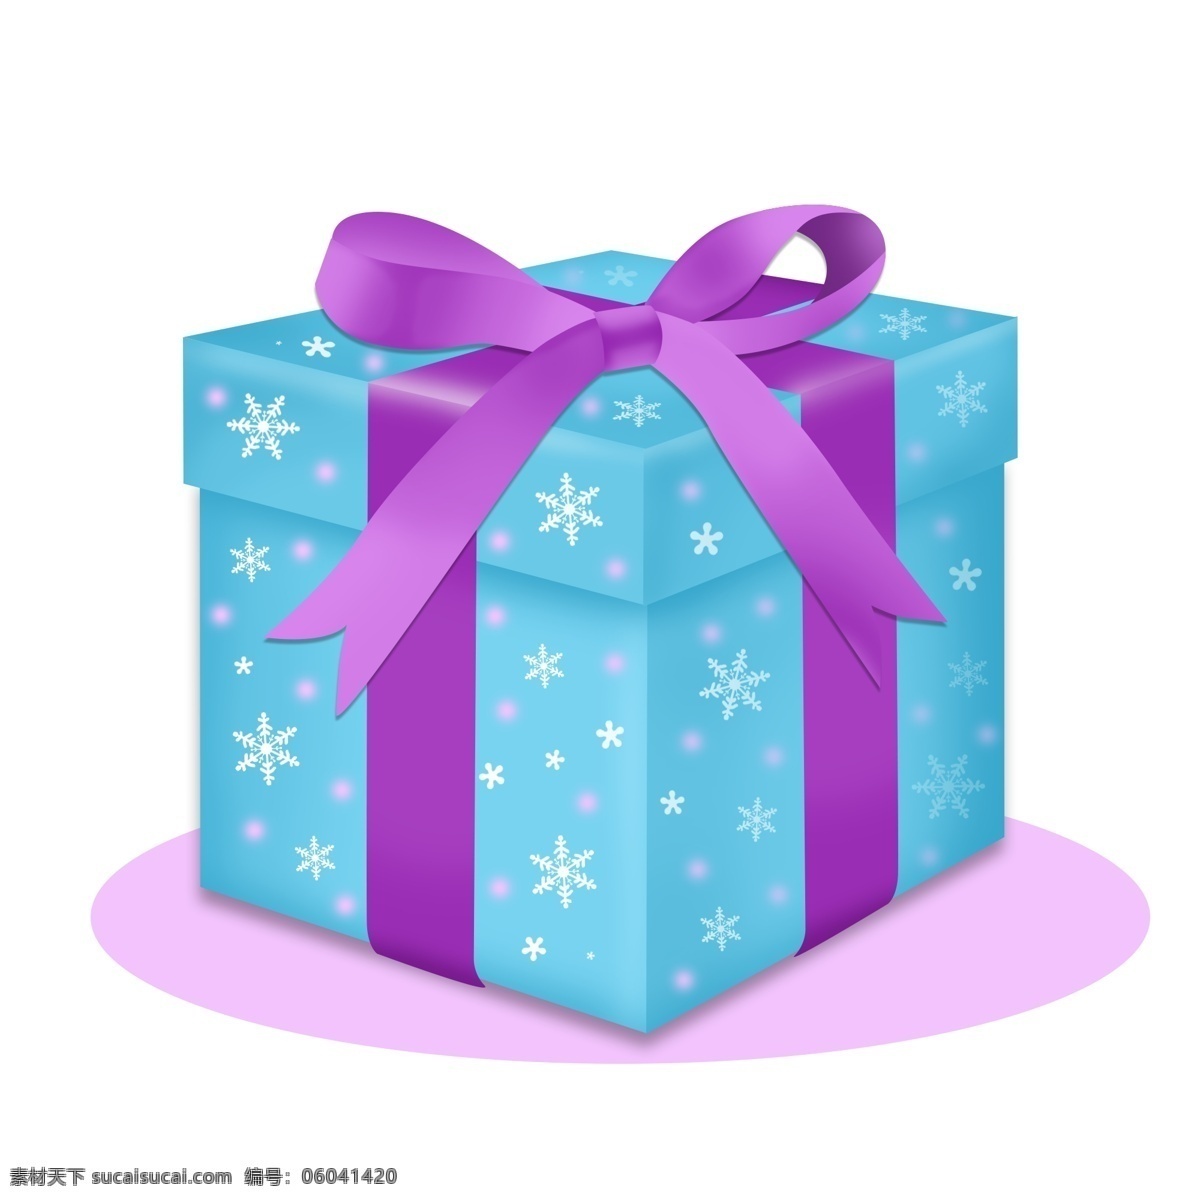 手绘 可爱 节日 礼物 盒 礼品盒 圣诞 平安夜 雪花 圣诞节 生日 礼盒 约会 礼物盒